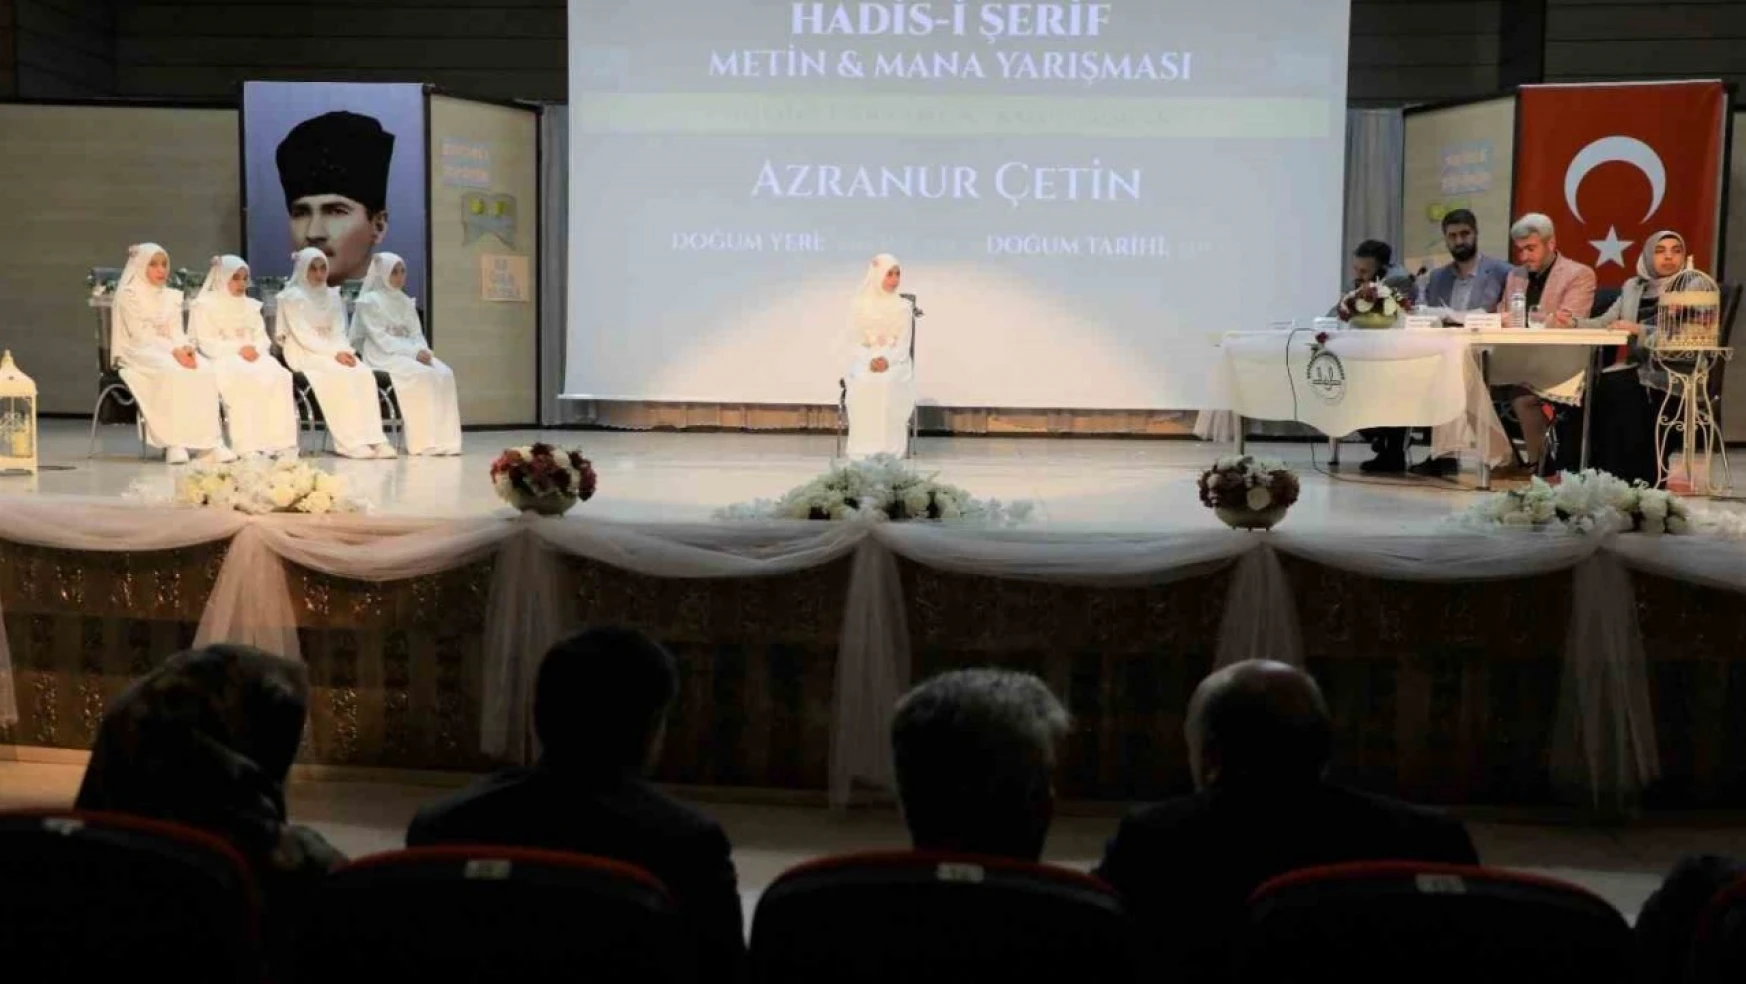 Erzincan'da Hadis-i Şerif Yarışması düzenlendi